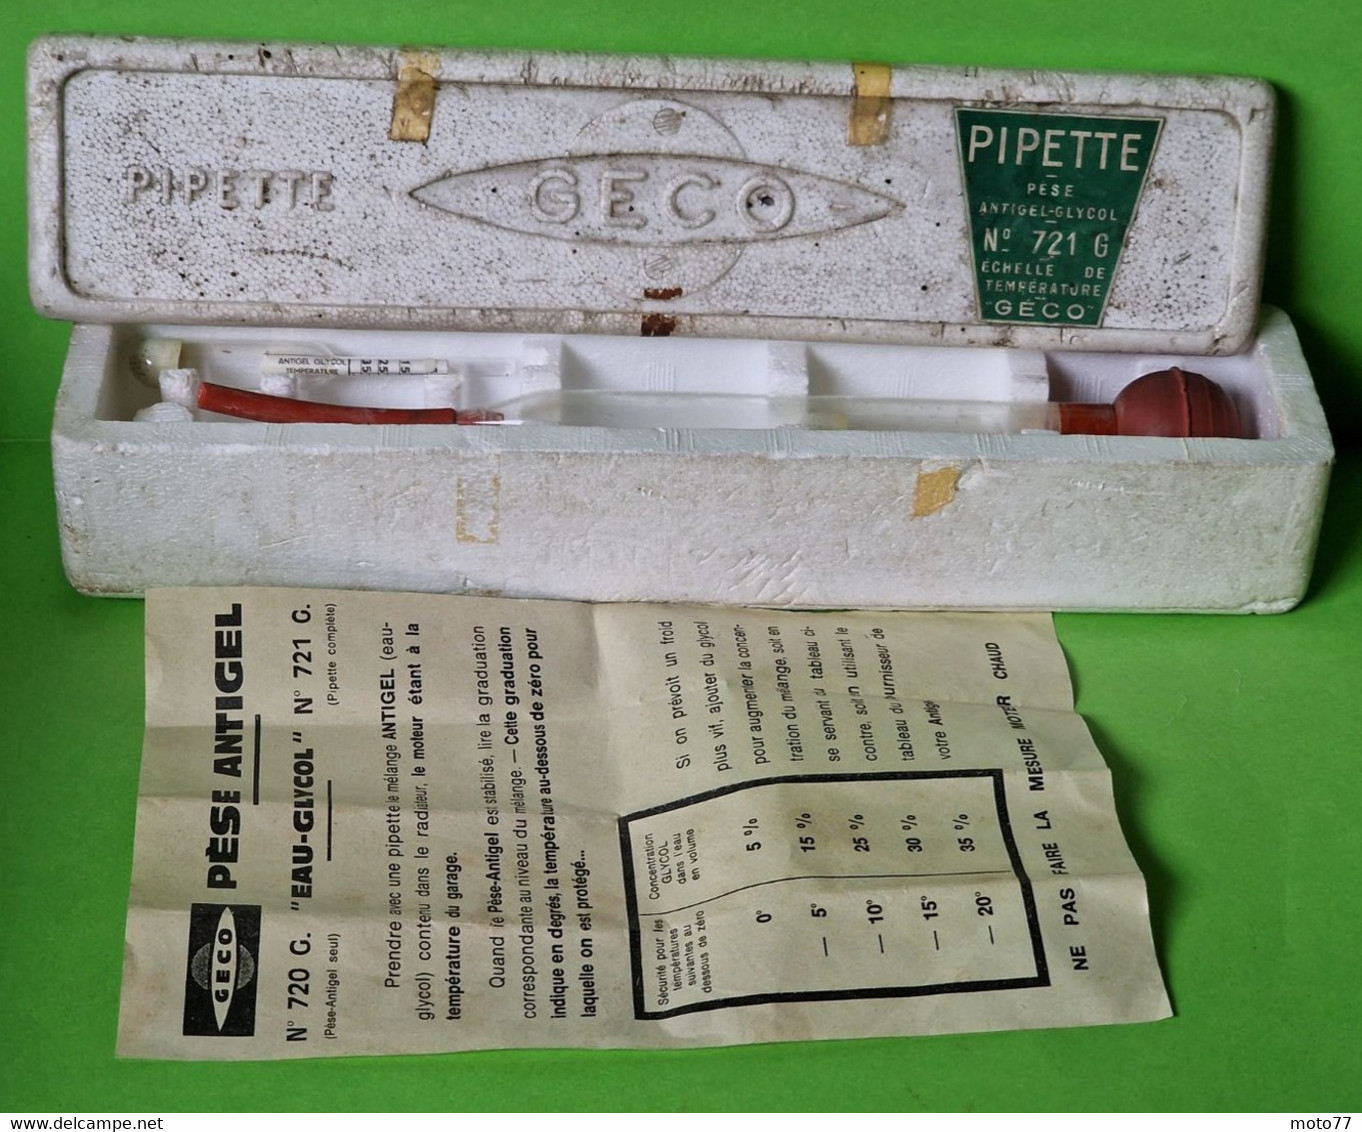 Ancien OUTIL spécial GECO - Pipette PÈSE Antigel Batterie véhicules - verre plastique -" laissé dans son jus "-vers 1960